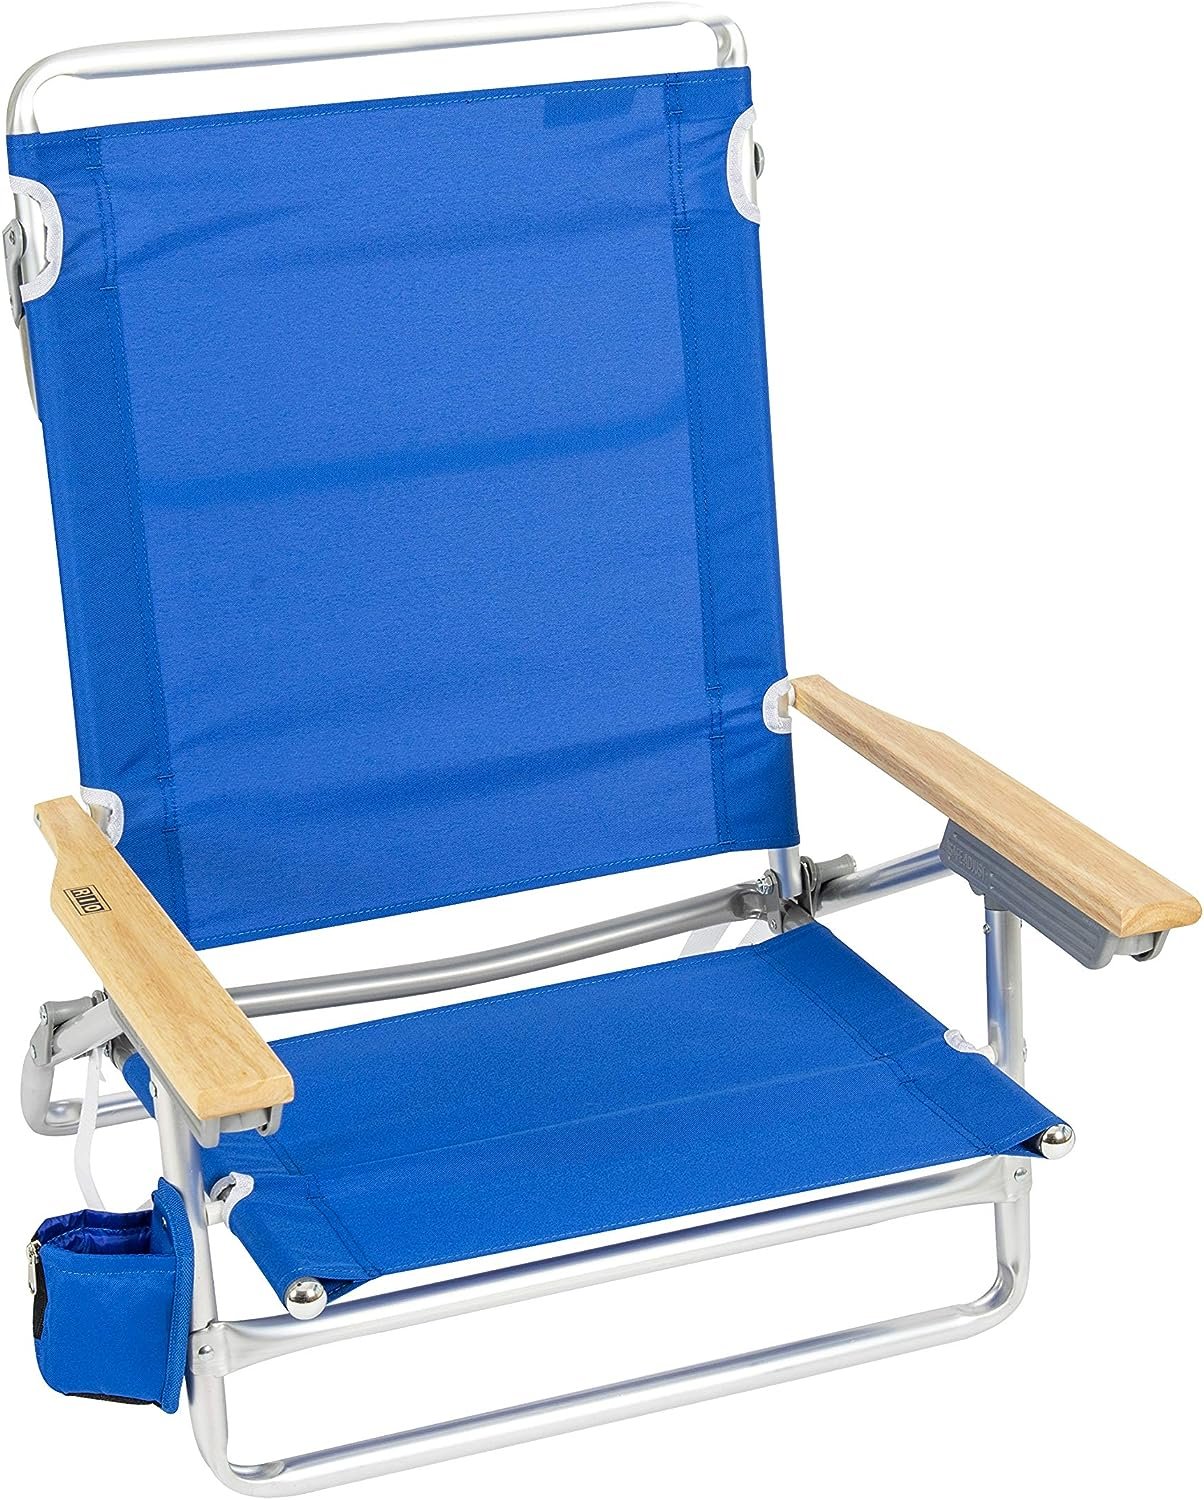 RIO beach Classic Lay-Flat Folding Beach Chair Review